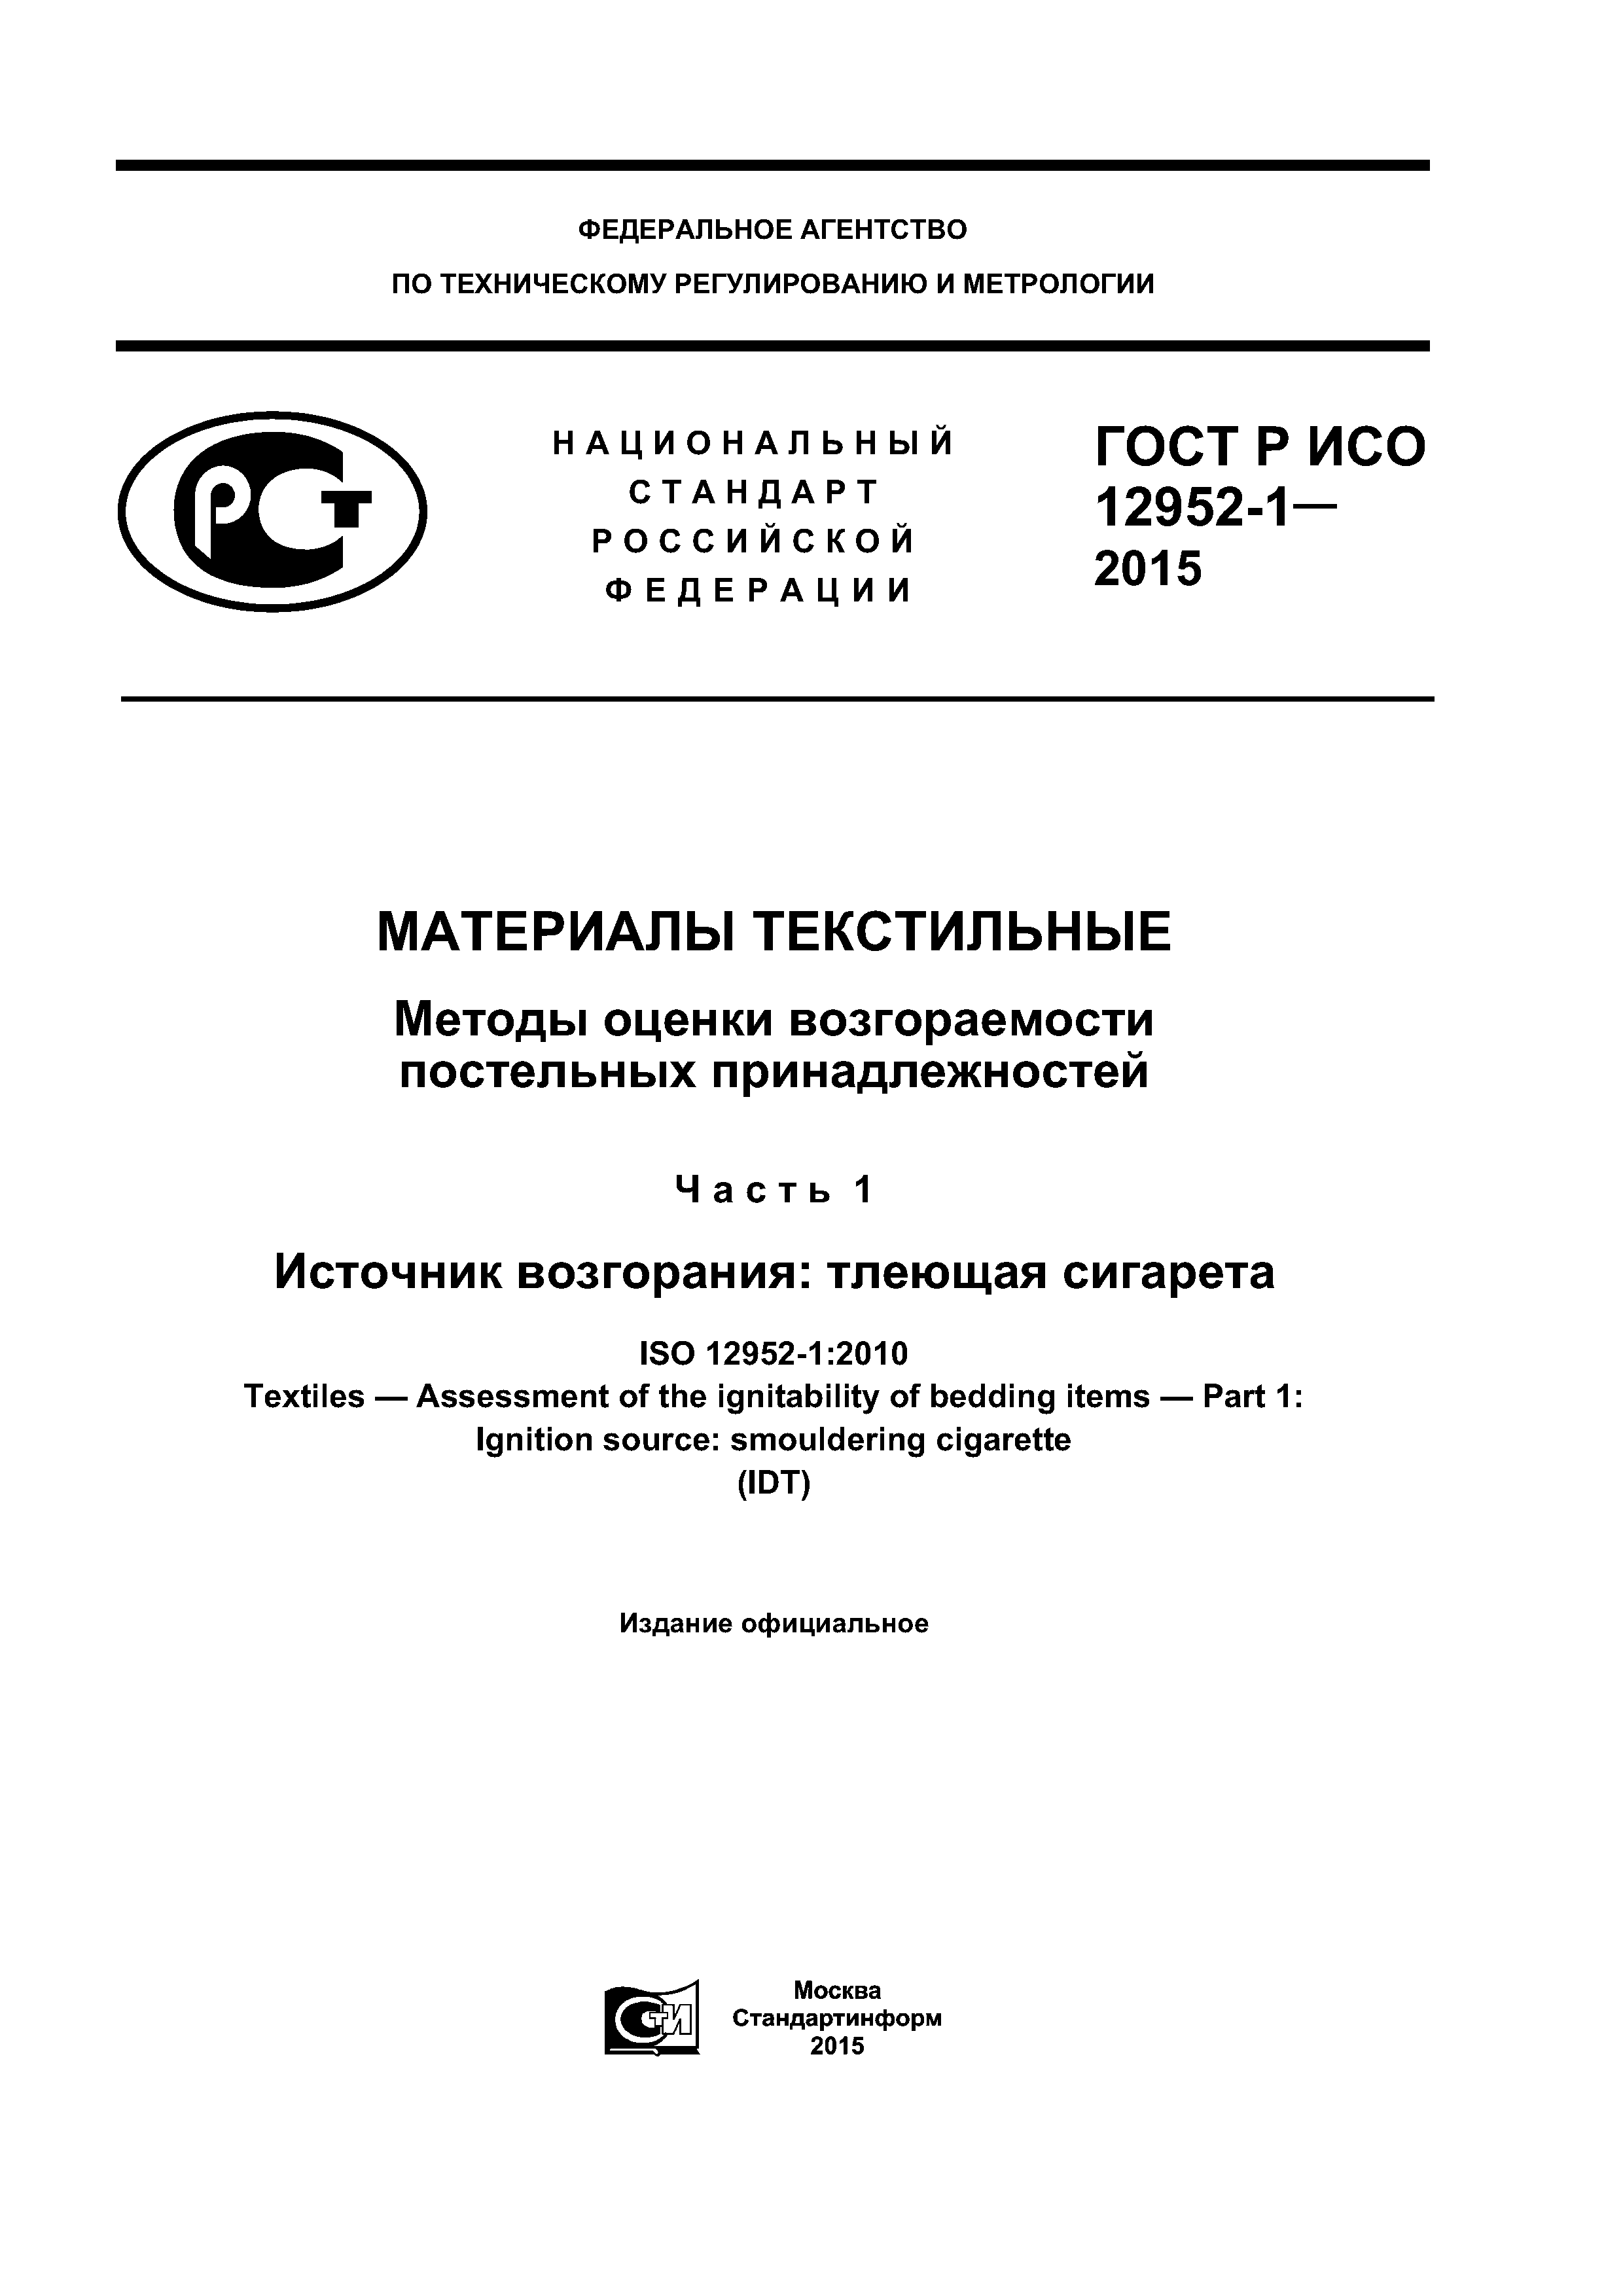 ГОСТ Р ИСО 12952-1-2015